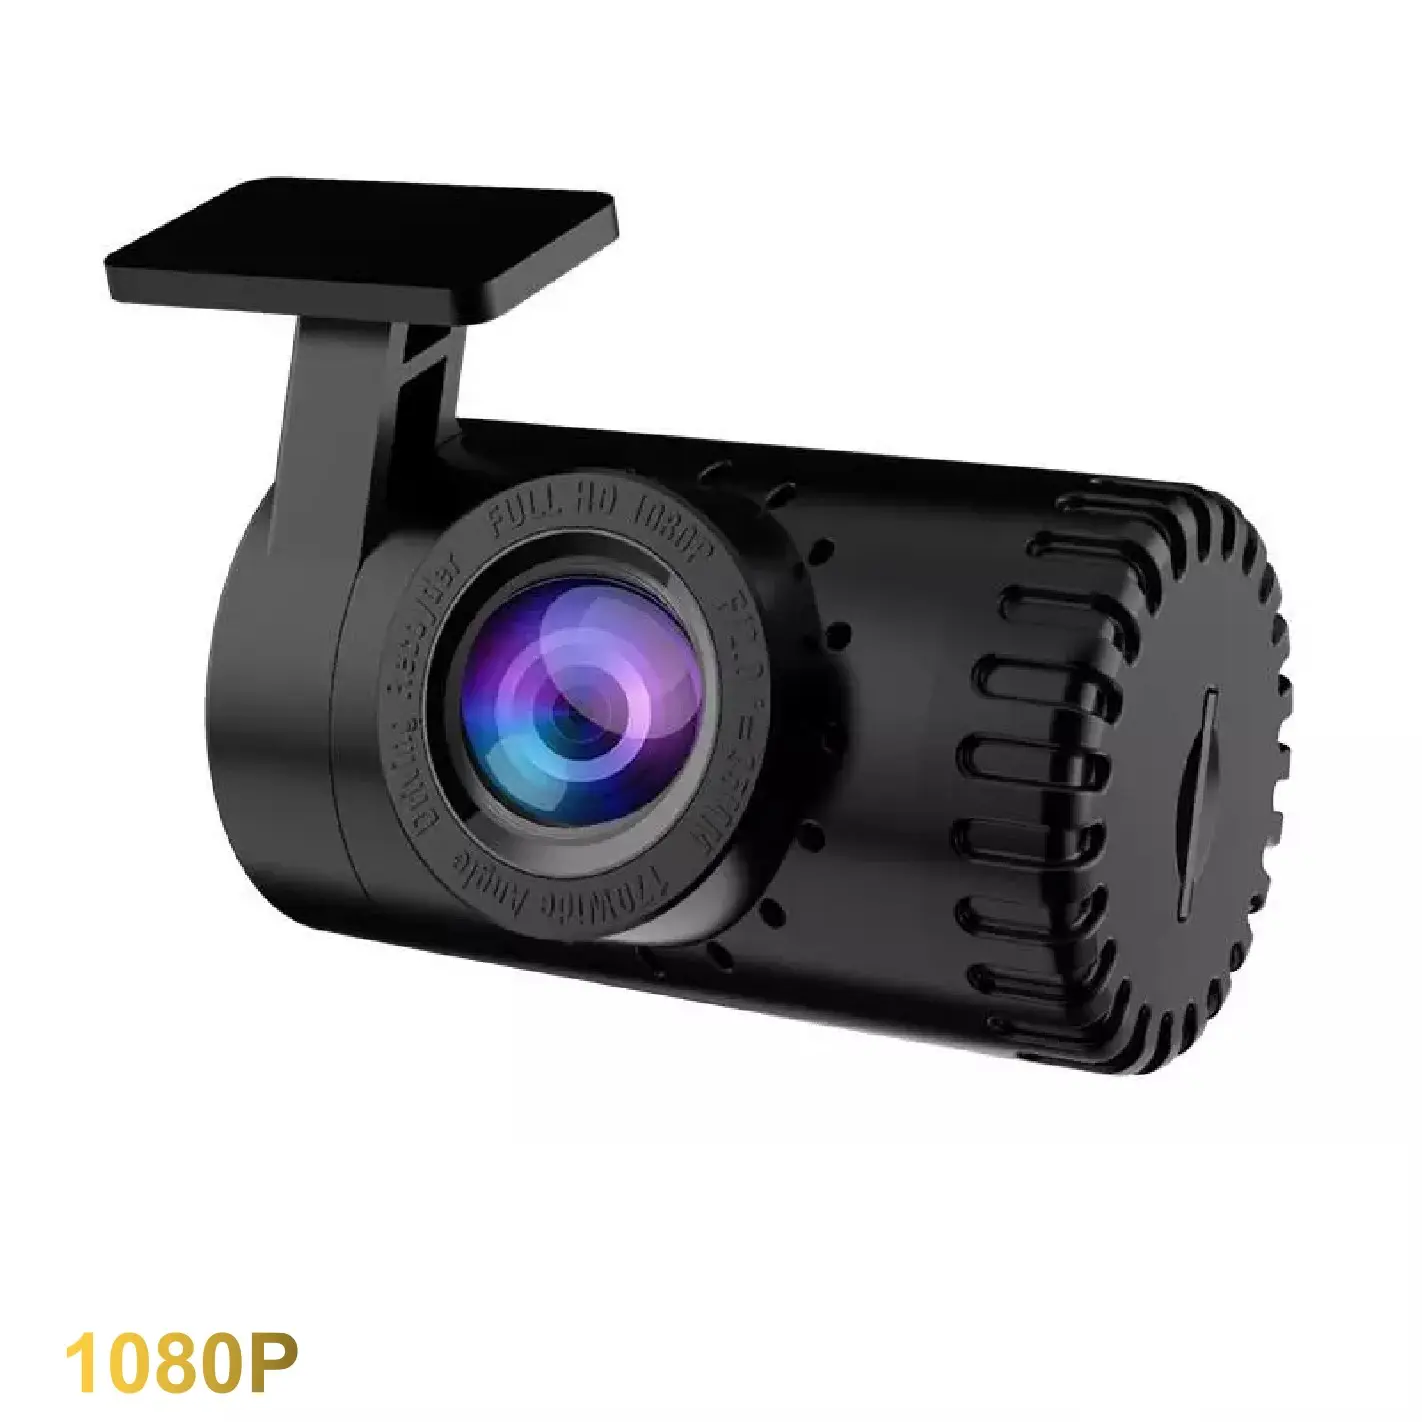 Junsun — caméra de tableau de bord 1080p Hd, Dashcam, caméra Hd, enregistreur vidéo Dvr, Wifi, Android, Usb, Vision nocturne cachée, grand Angle 170 degrés, capteur G